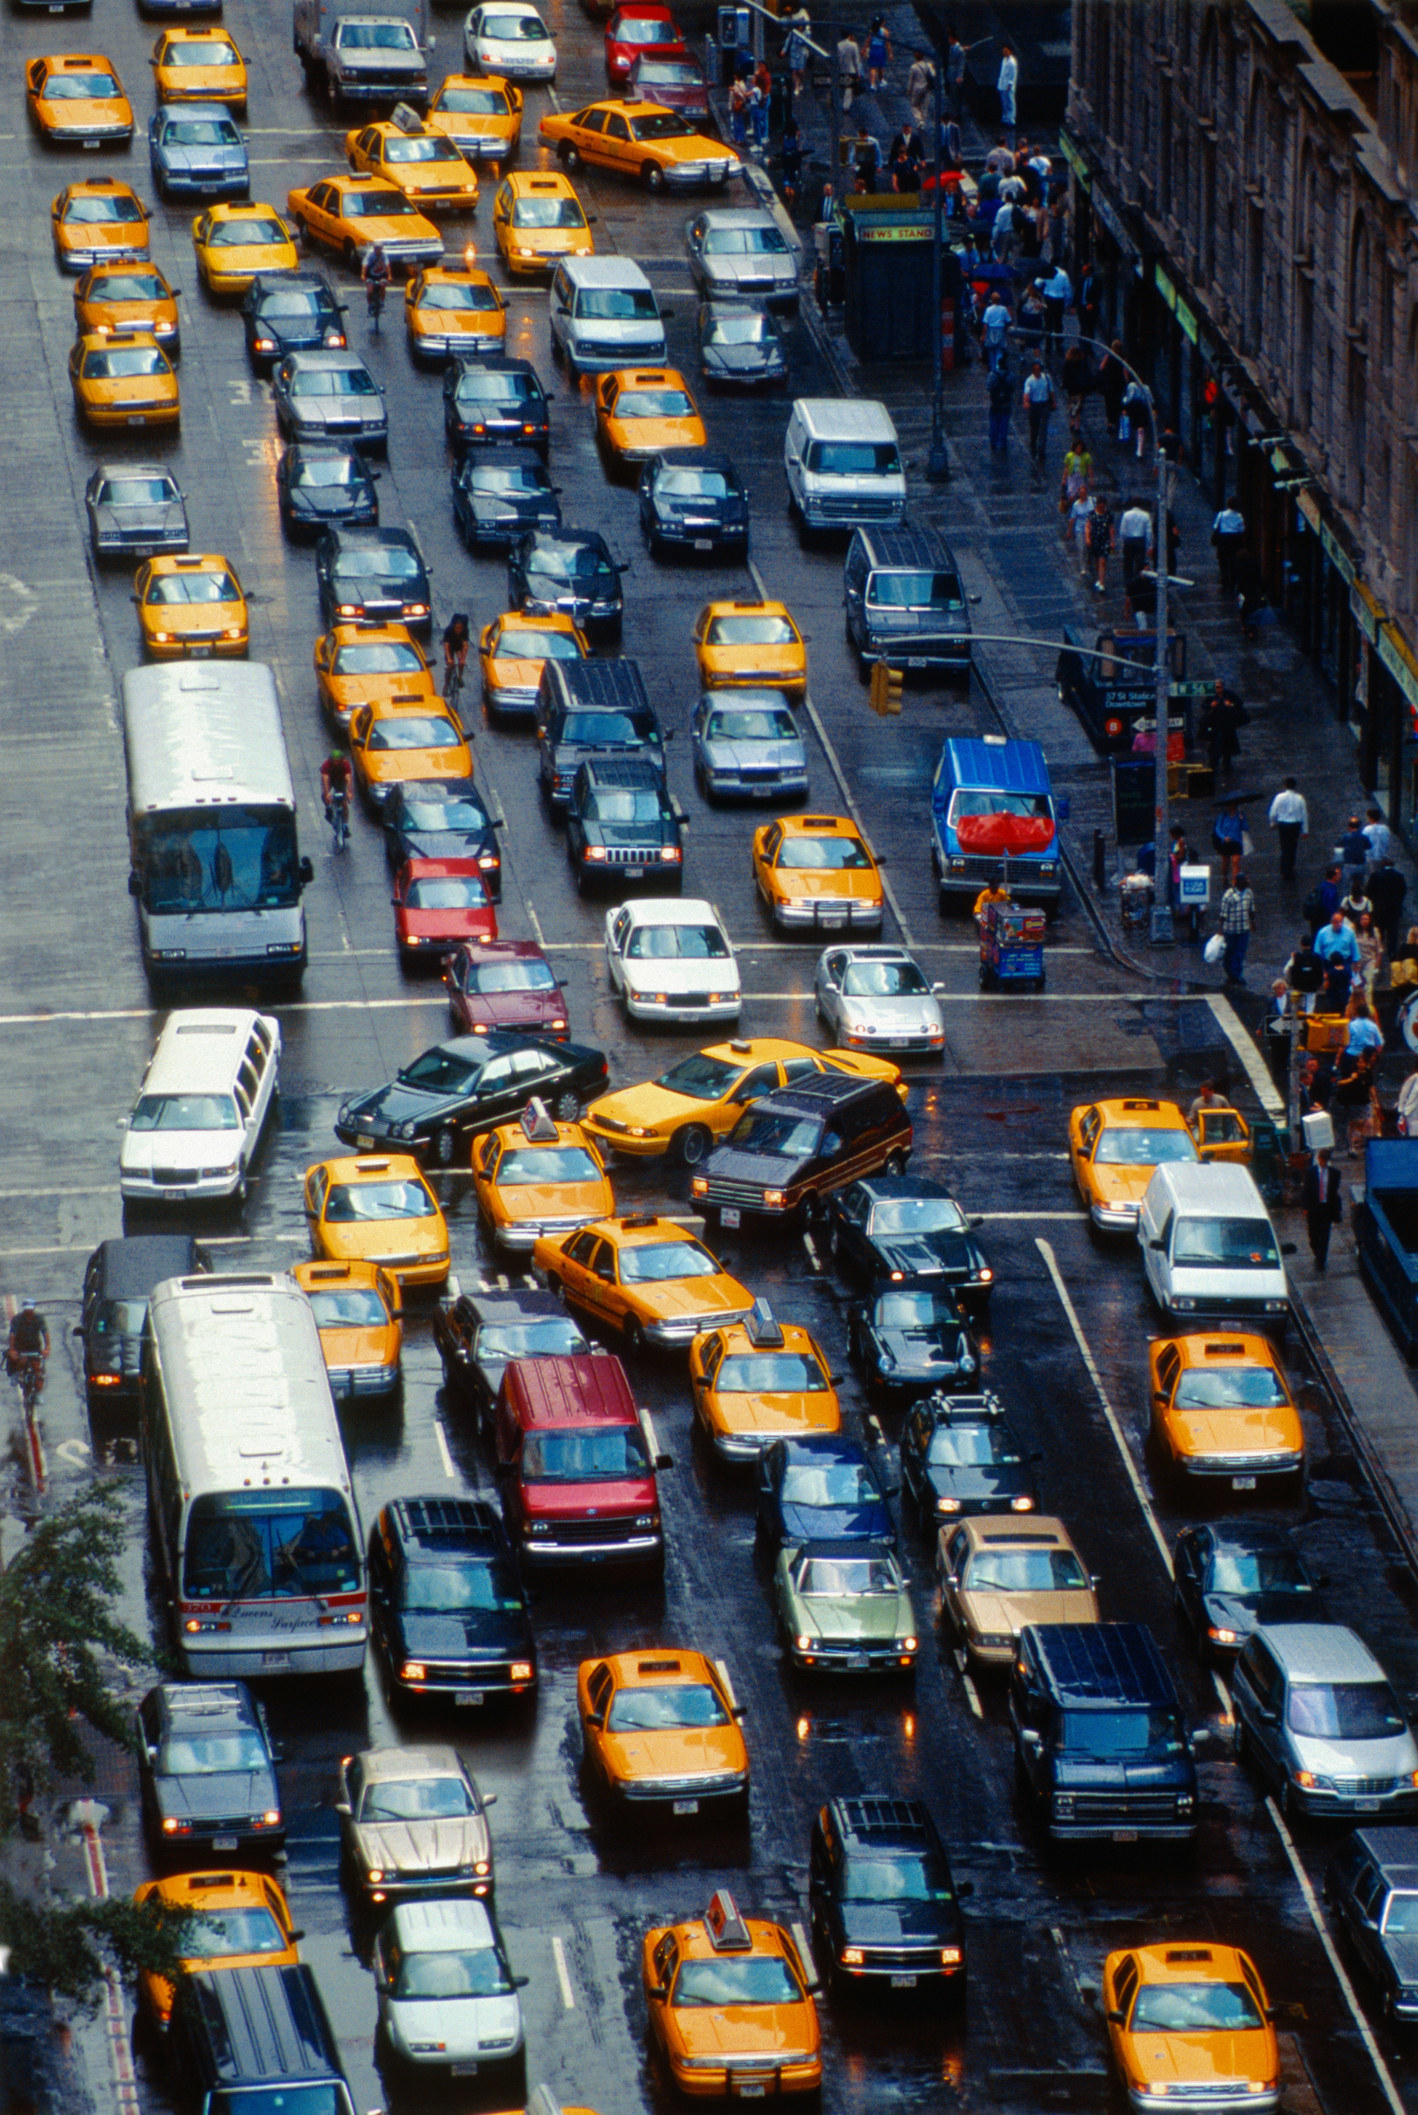 Bumper-to-bumper traffic in NYC